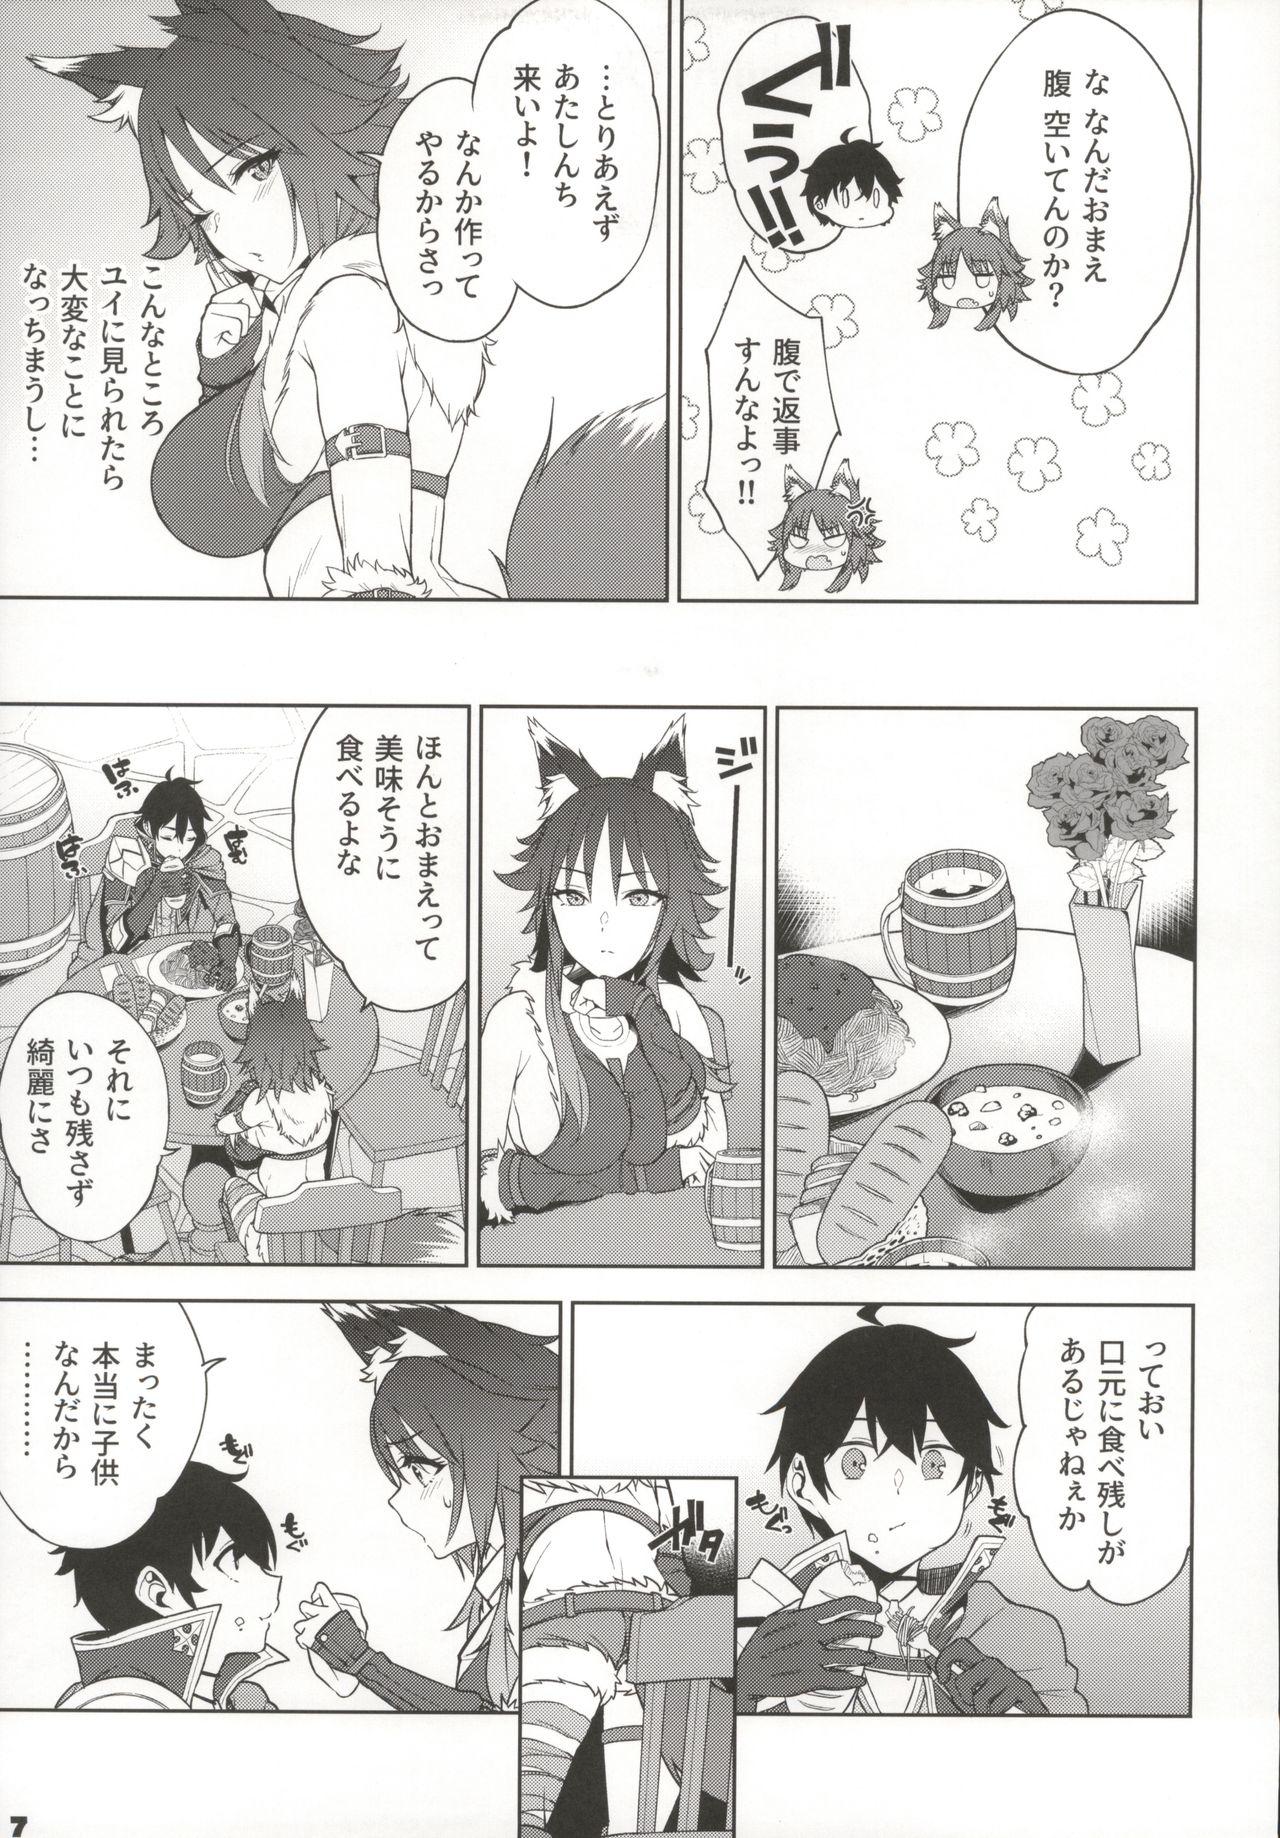 Jav Makoto no Ai - Princess connect Bubble - Page 8